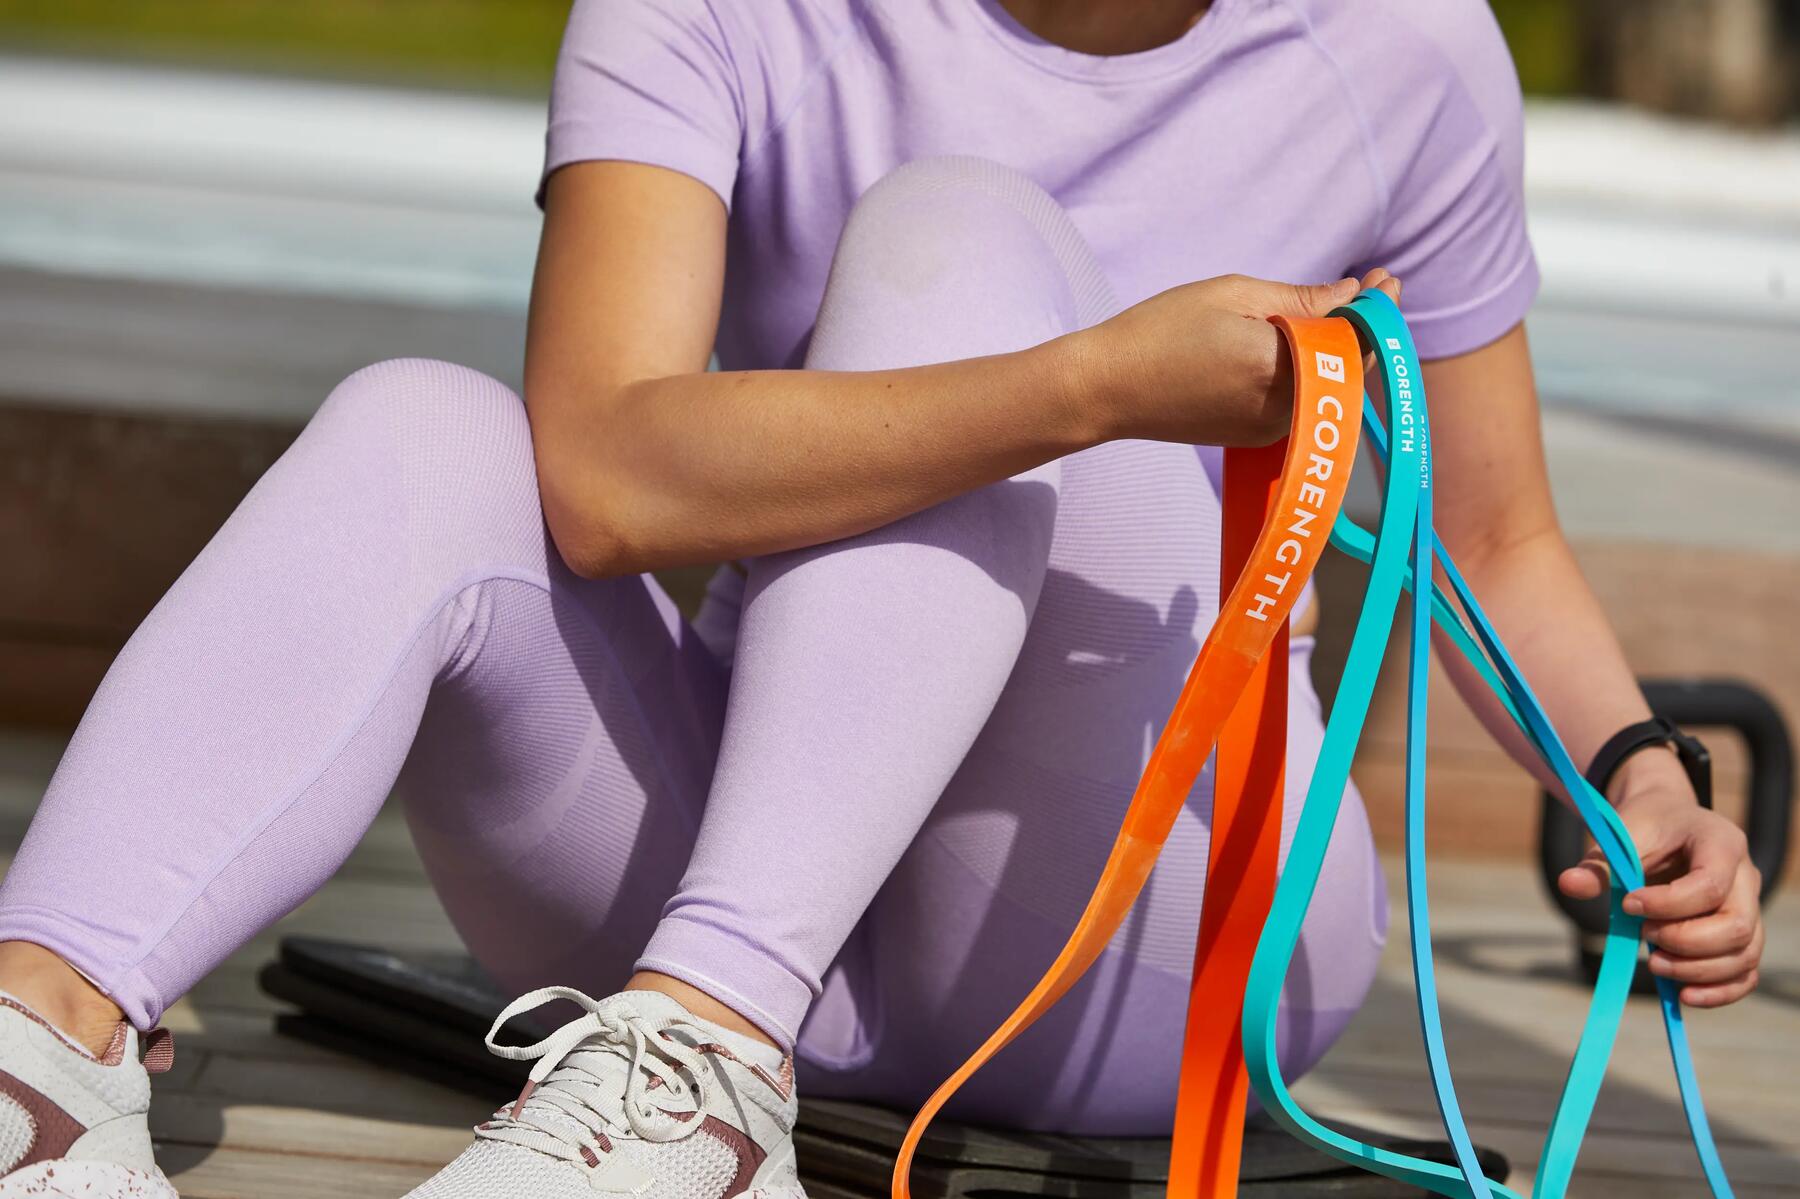 kobieta w odzieży fitness trzymająca gumy treningowe w różnych kolorach 